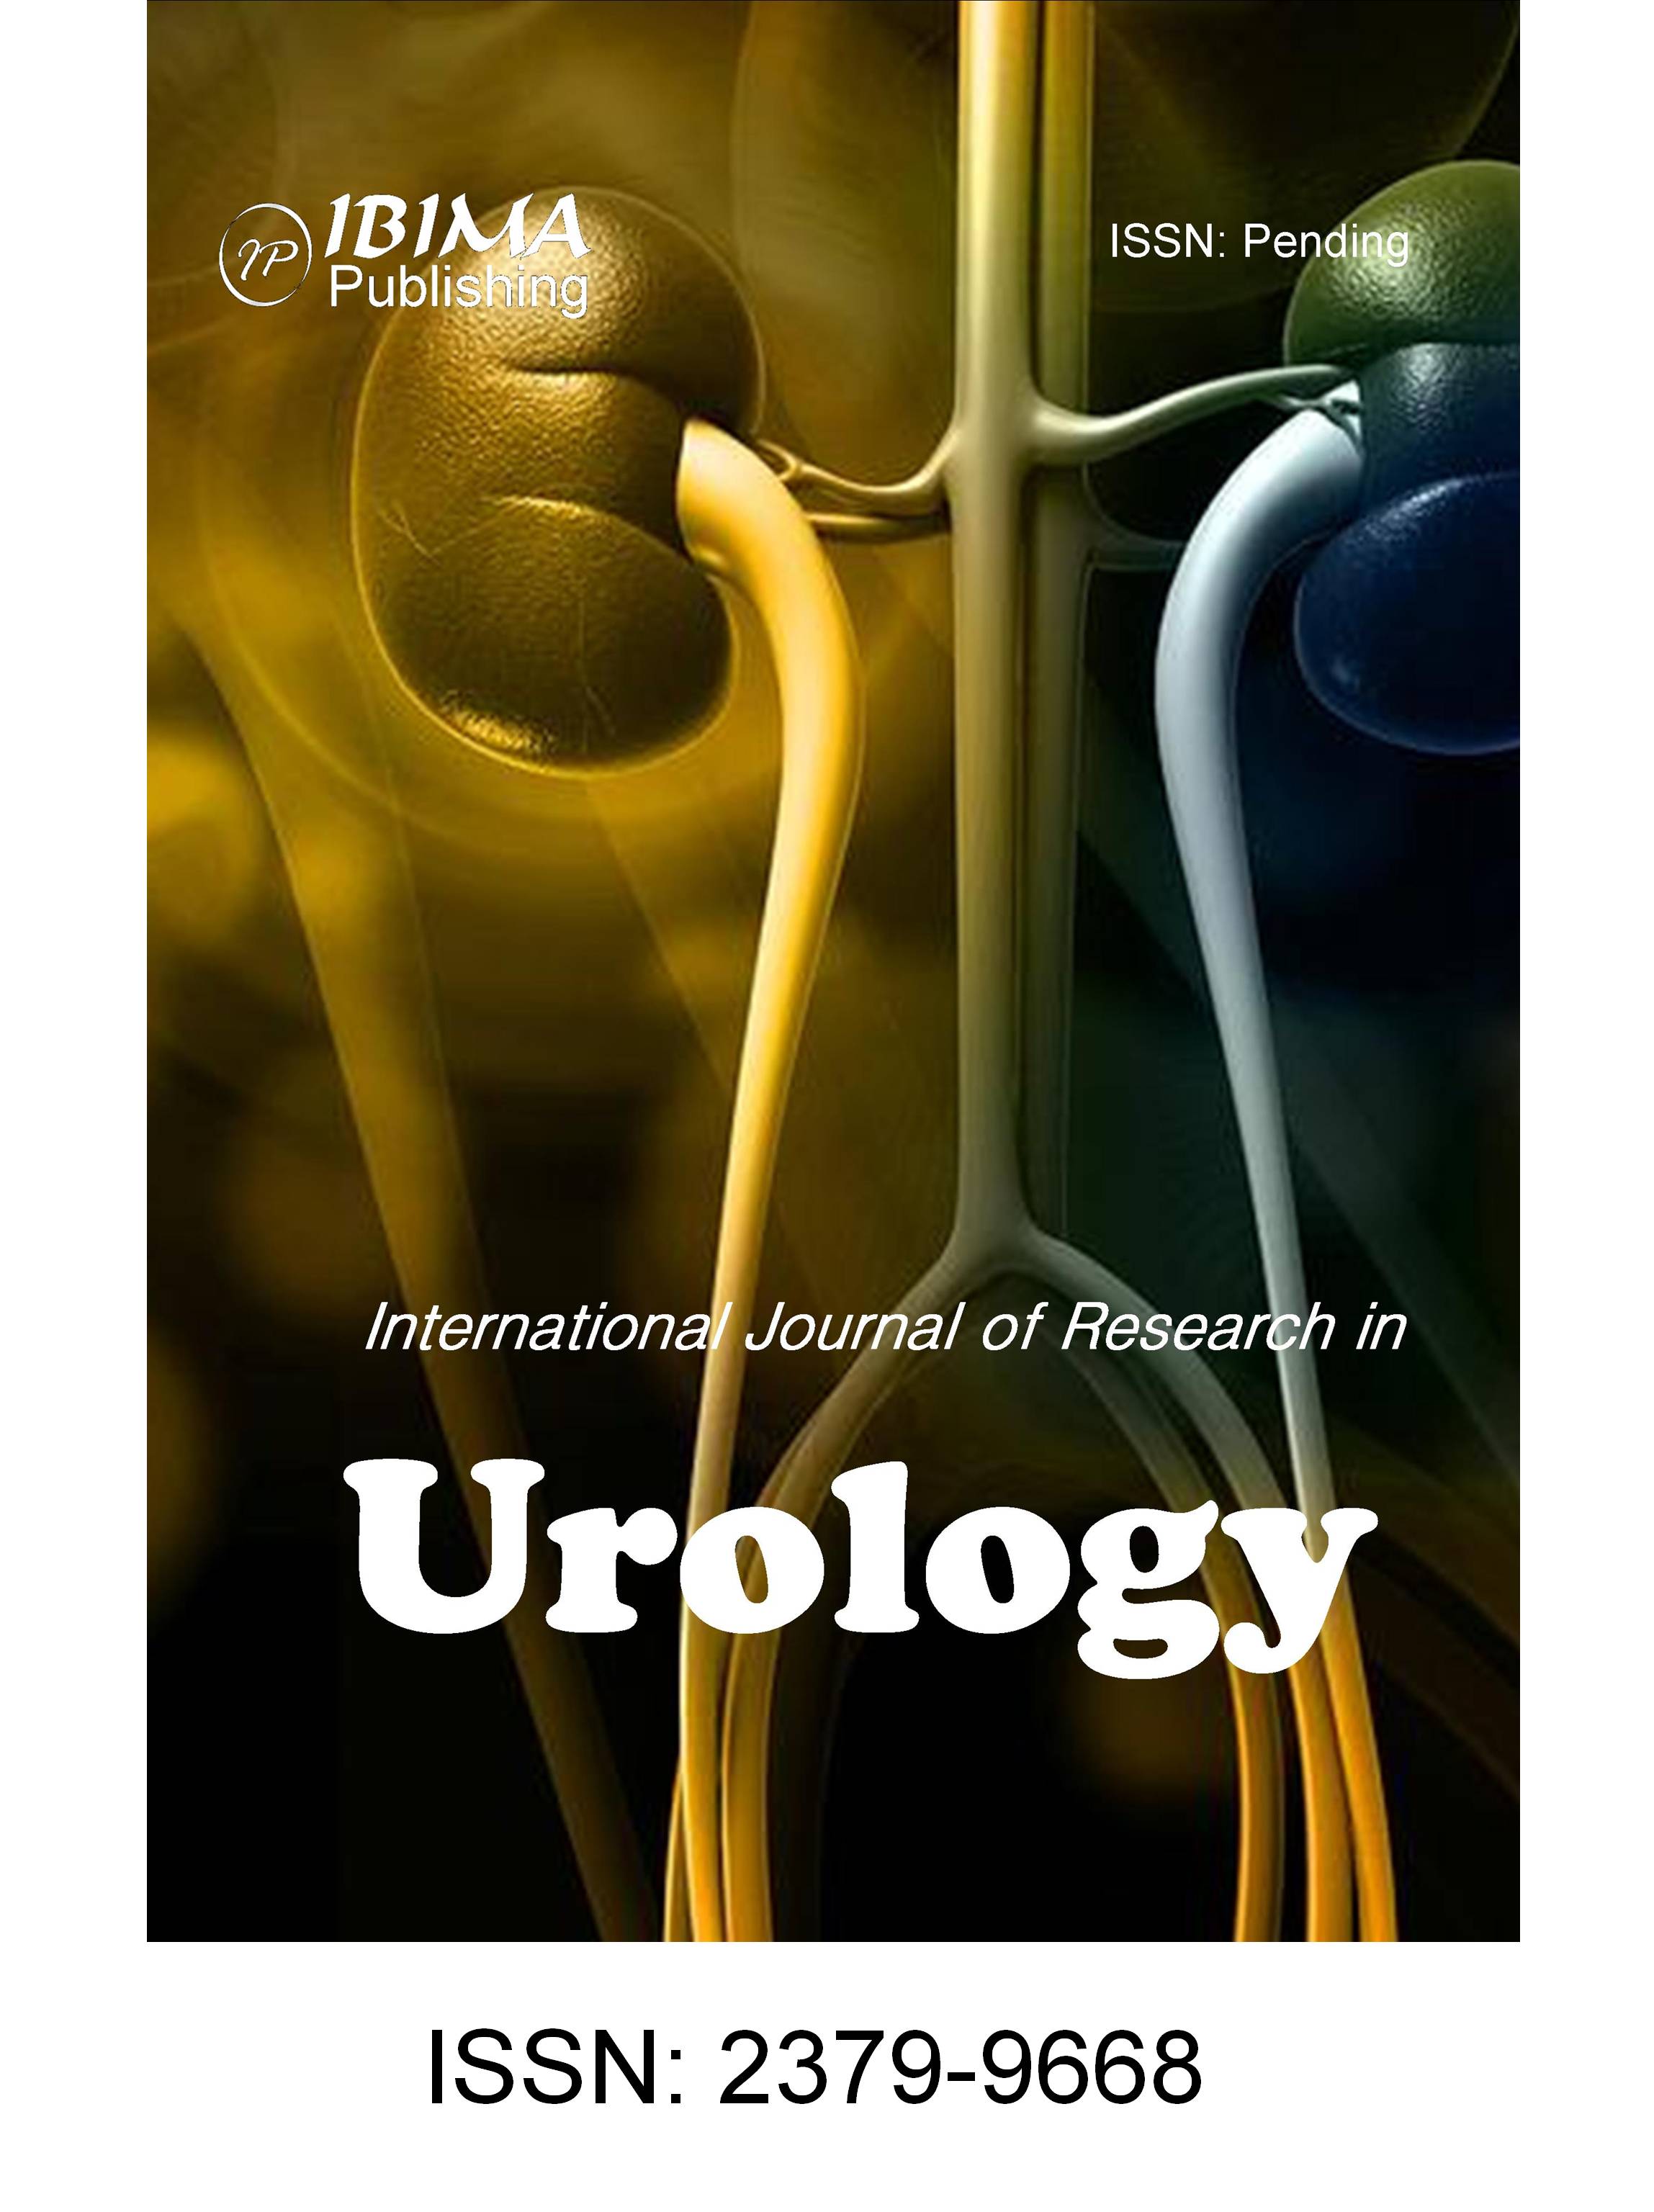 Pathology for urologists